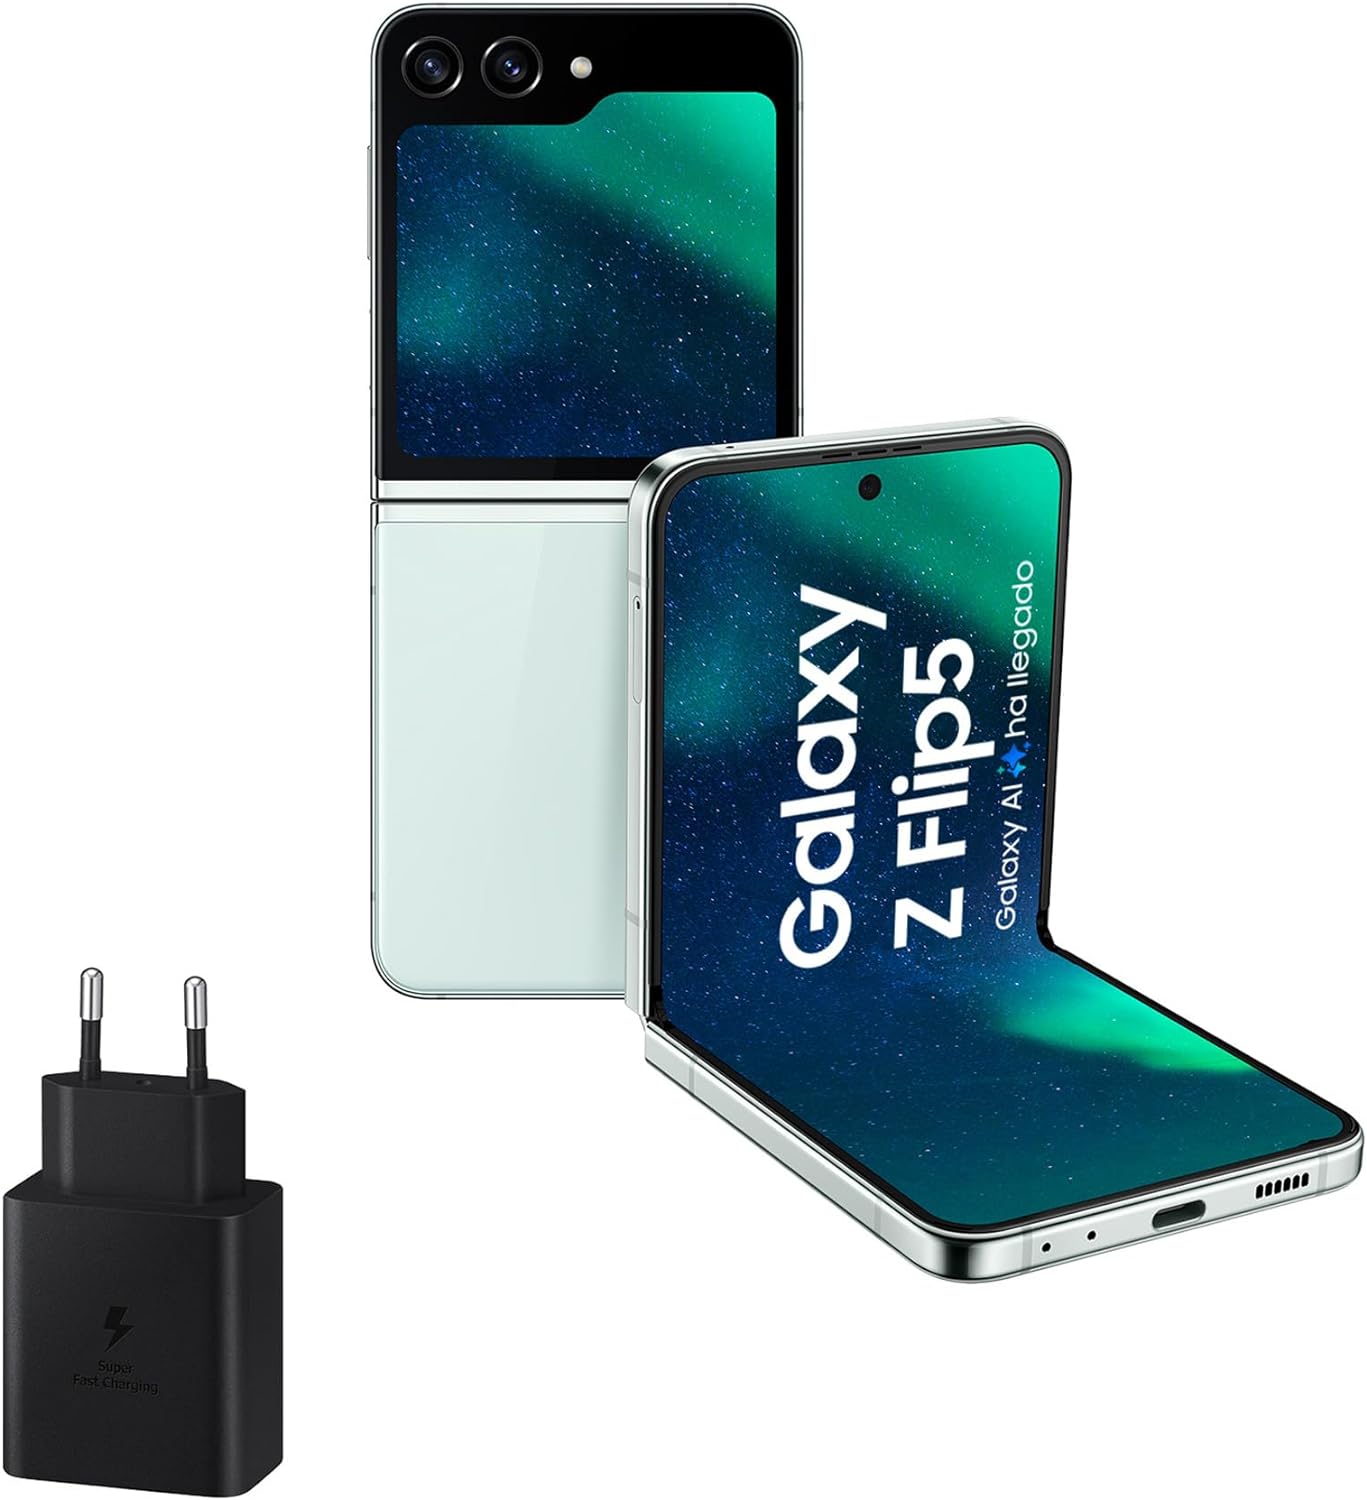 chollo SAMSUNG Galaxy Z Flip5, 256 GB + Cargador 45W - Teléfono Móvil Plegable con IA, Smartphone Android Libre, 8GB de RAM, Diseño Plegable, Verde claro (Versión Española)